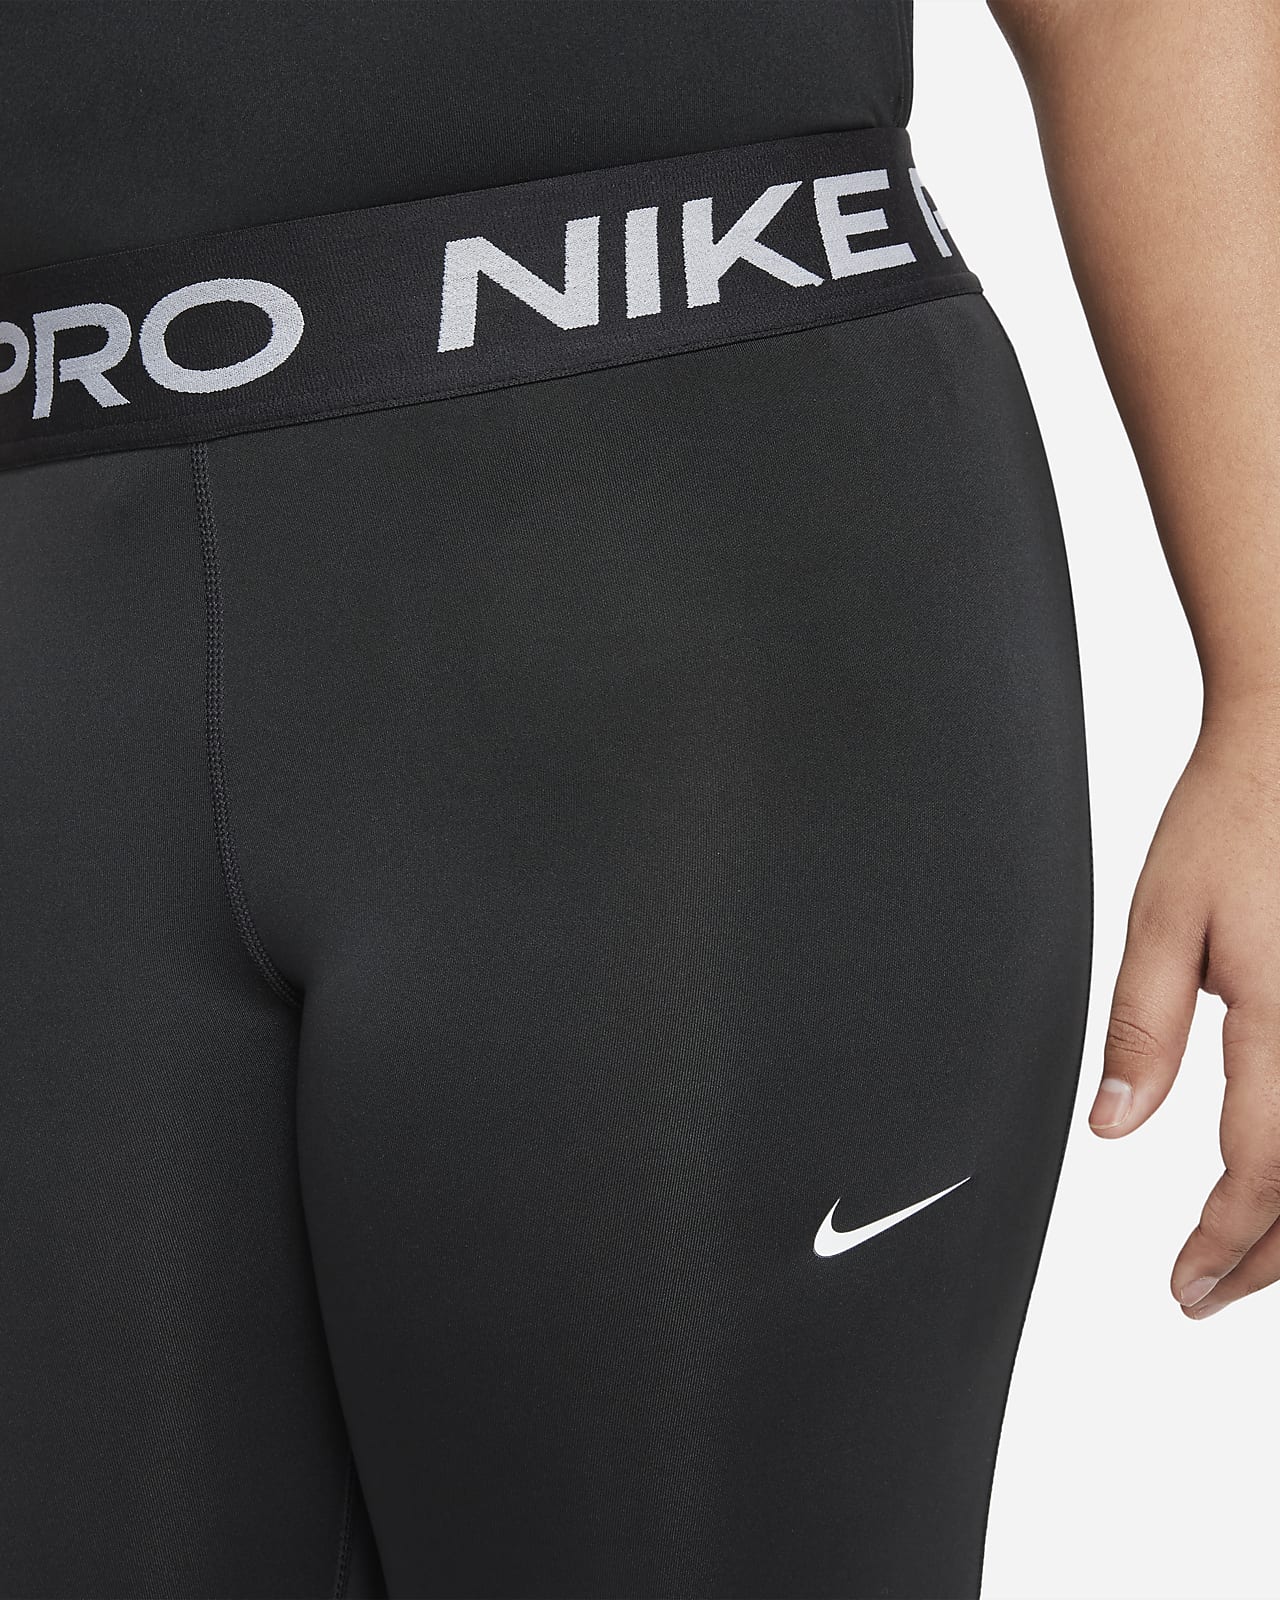 Nike Pro Women's Black Training Capri Leggings (Size M)